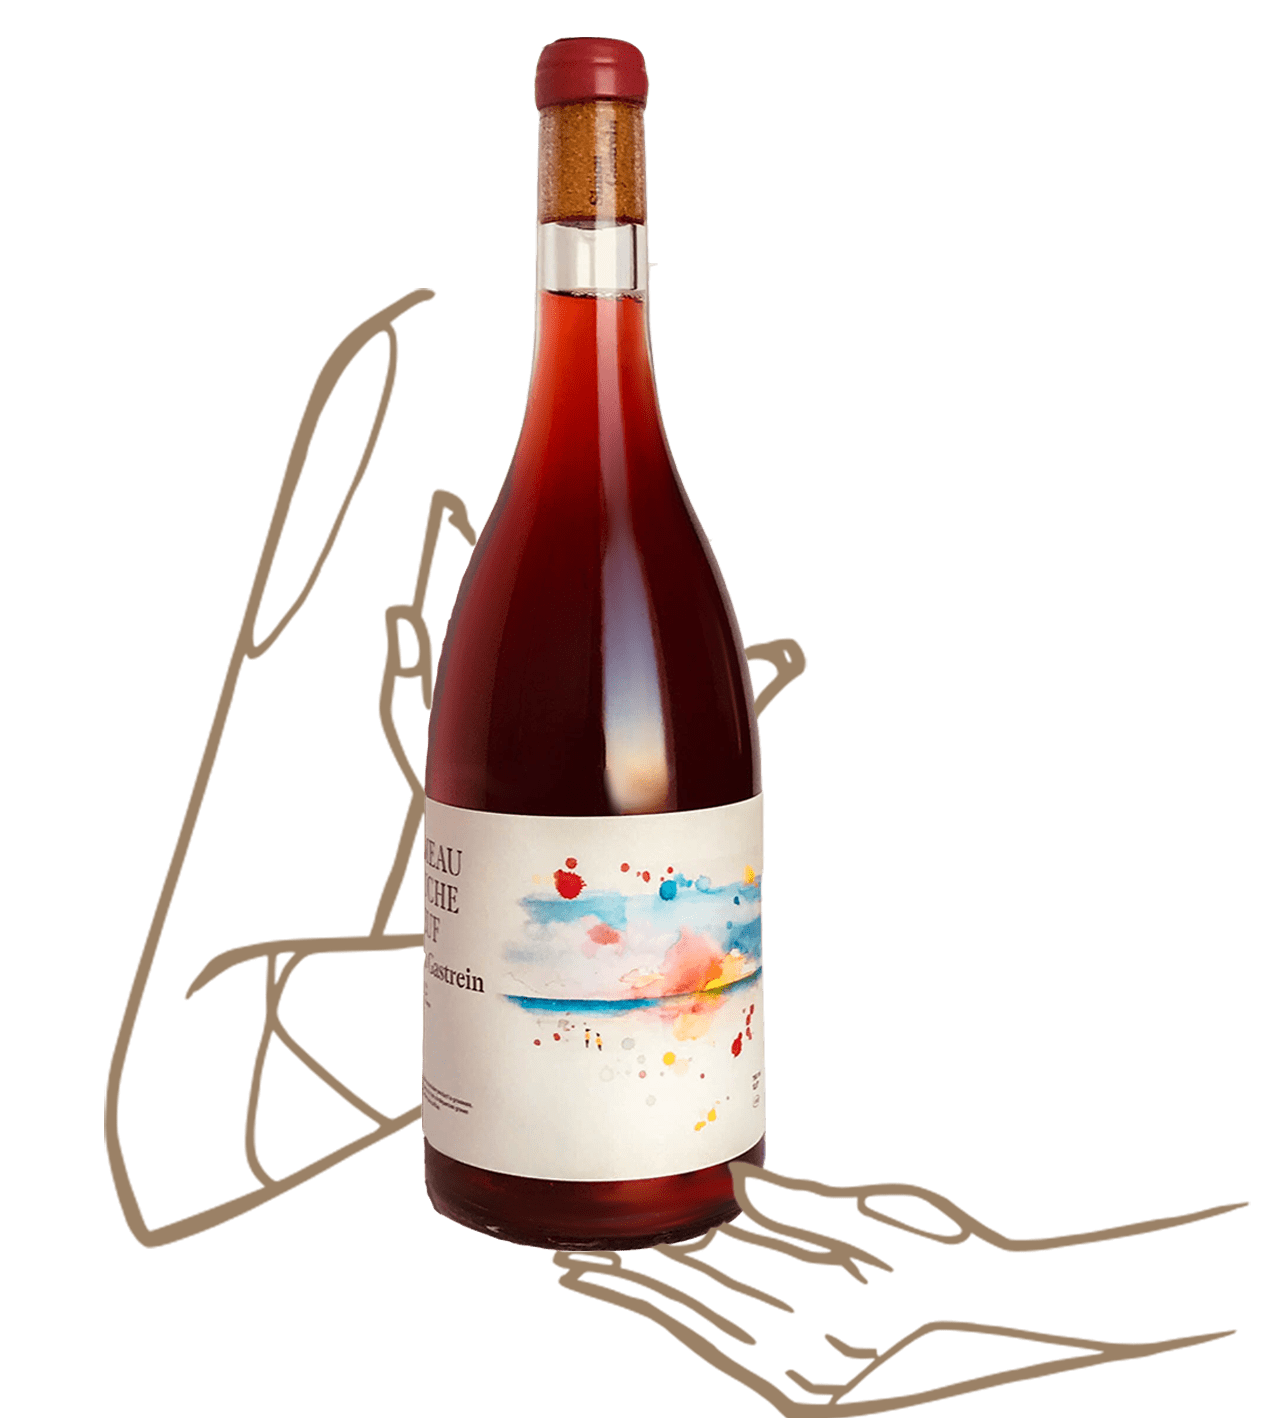 Le Rouget du Hameau toucheboeuf est un vin naturel